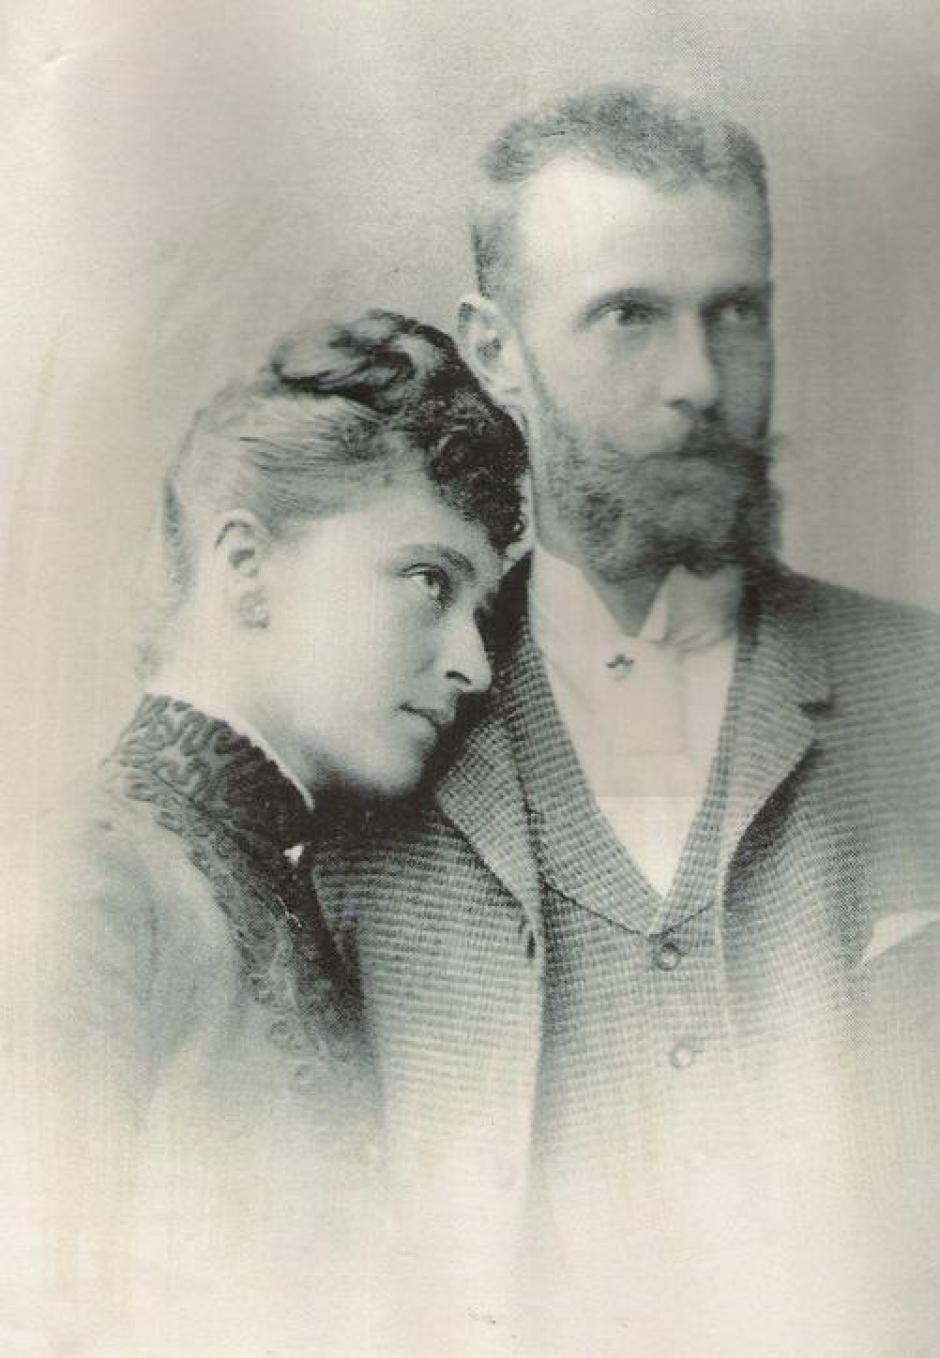 Isabel y Sergei en una imagen de la época